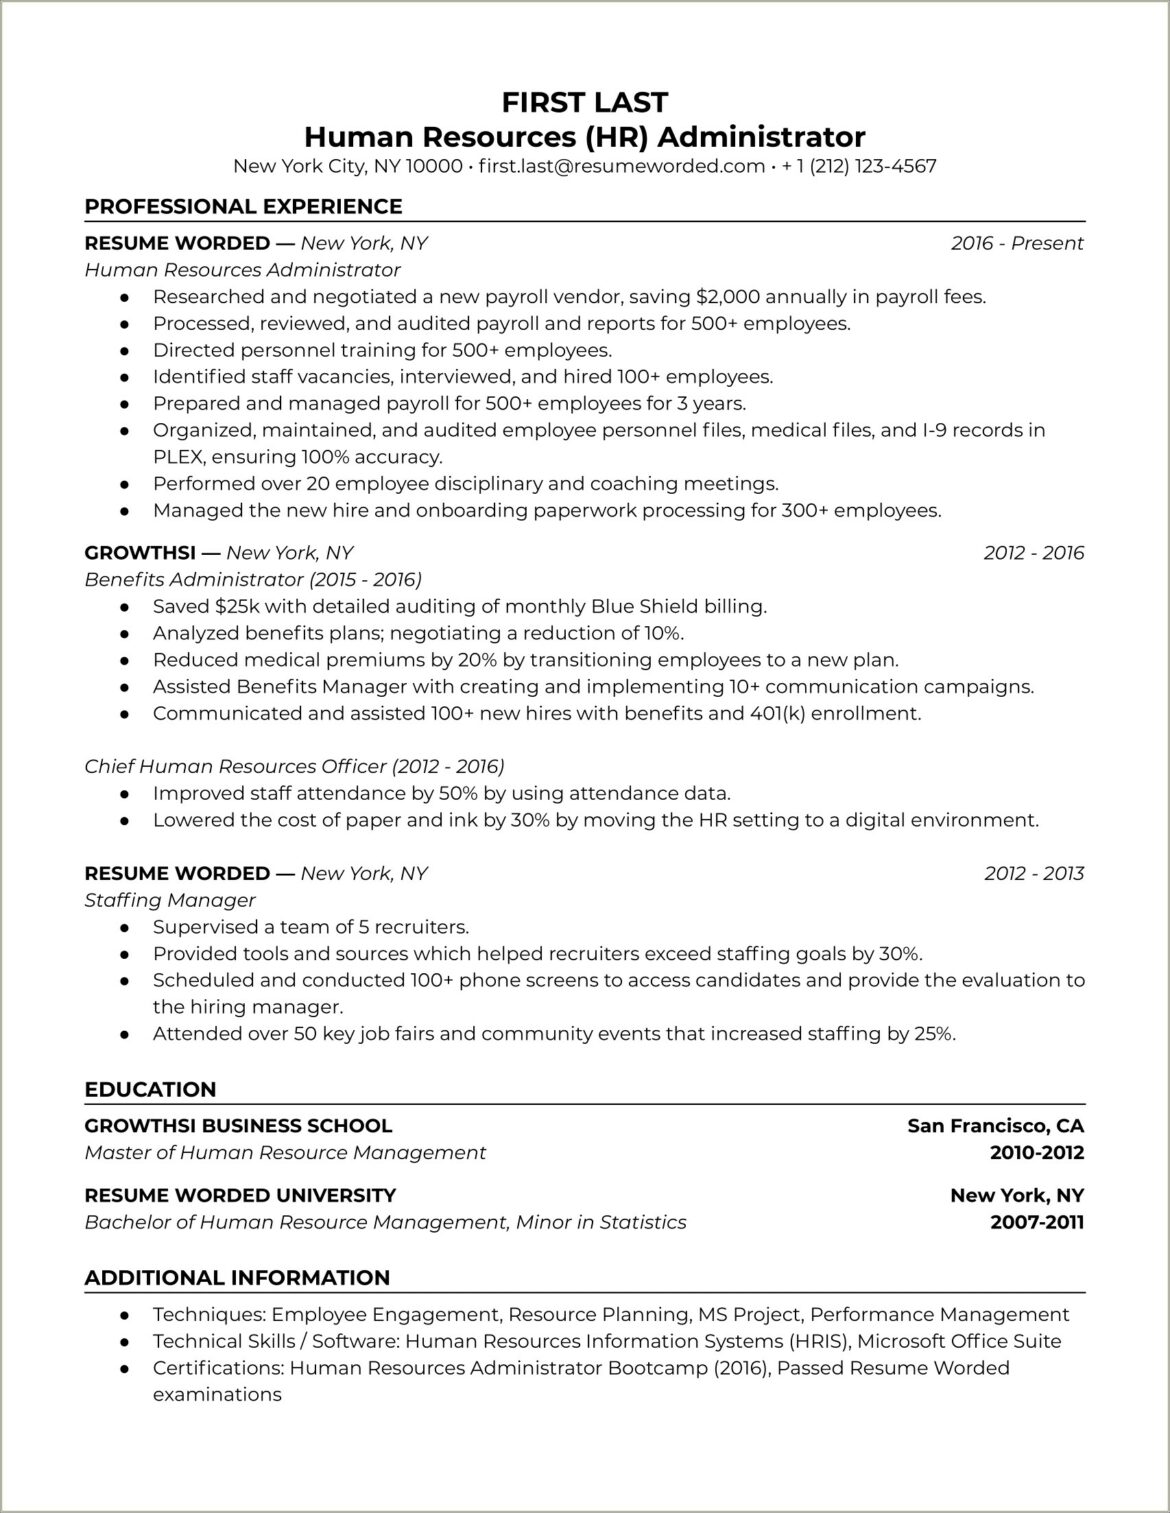 Sample Resume Of An Hr Recruiter